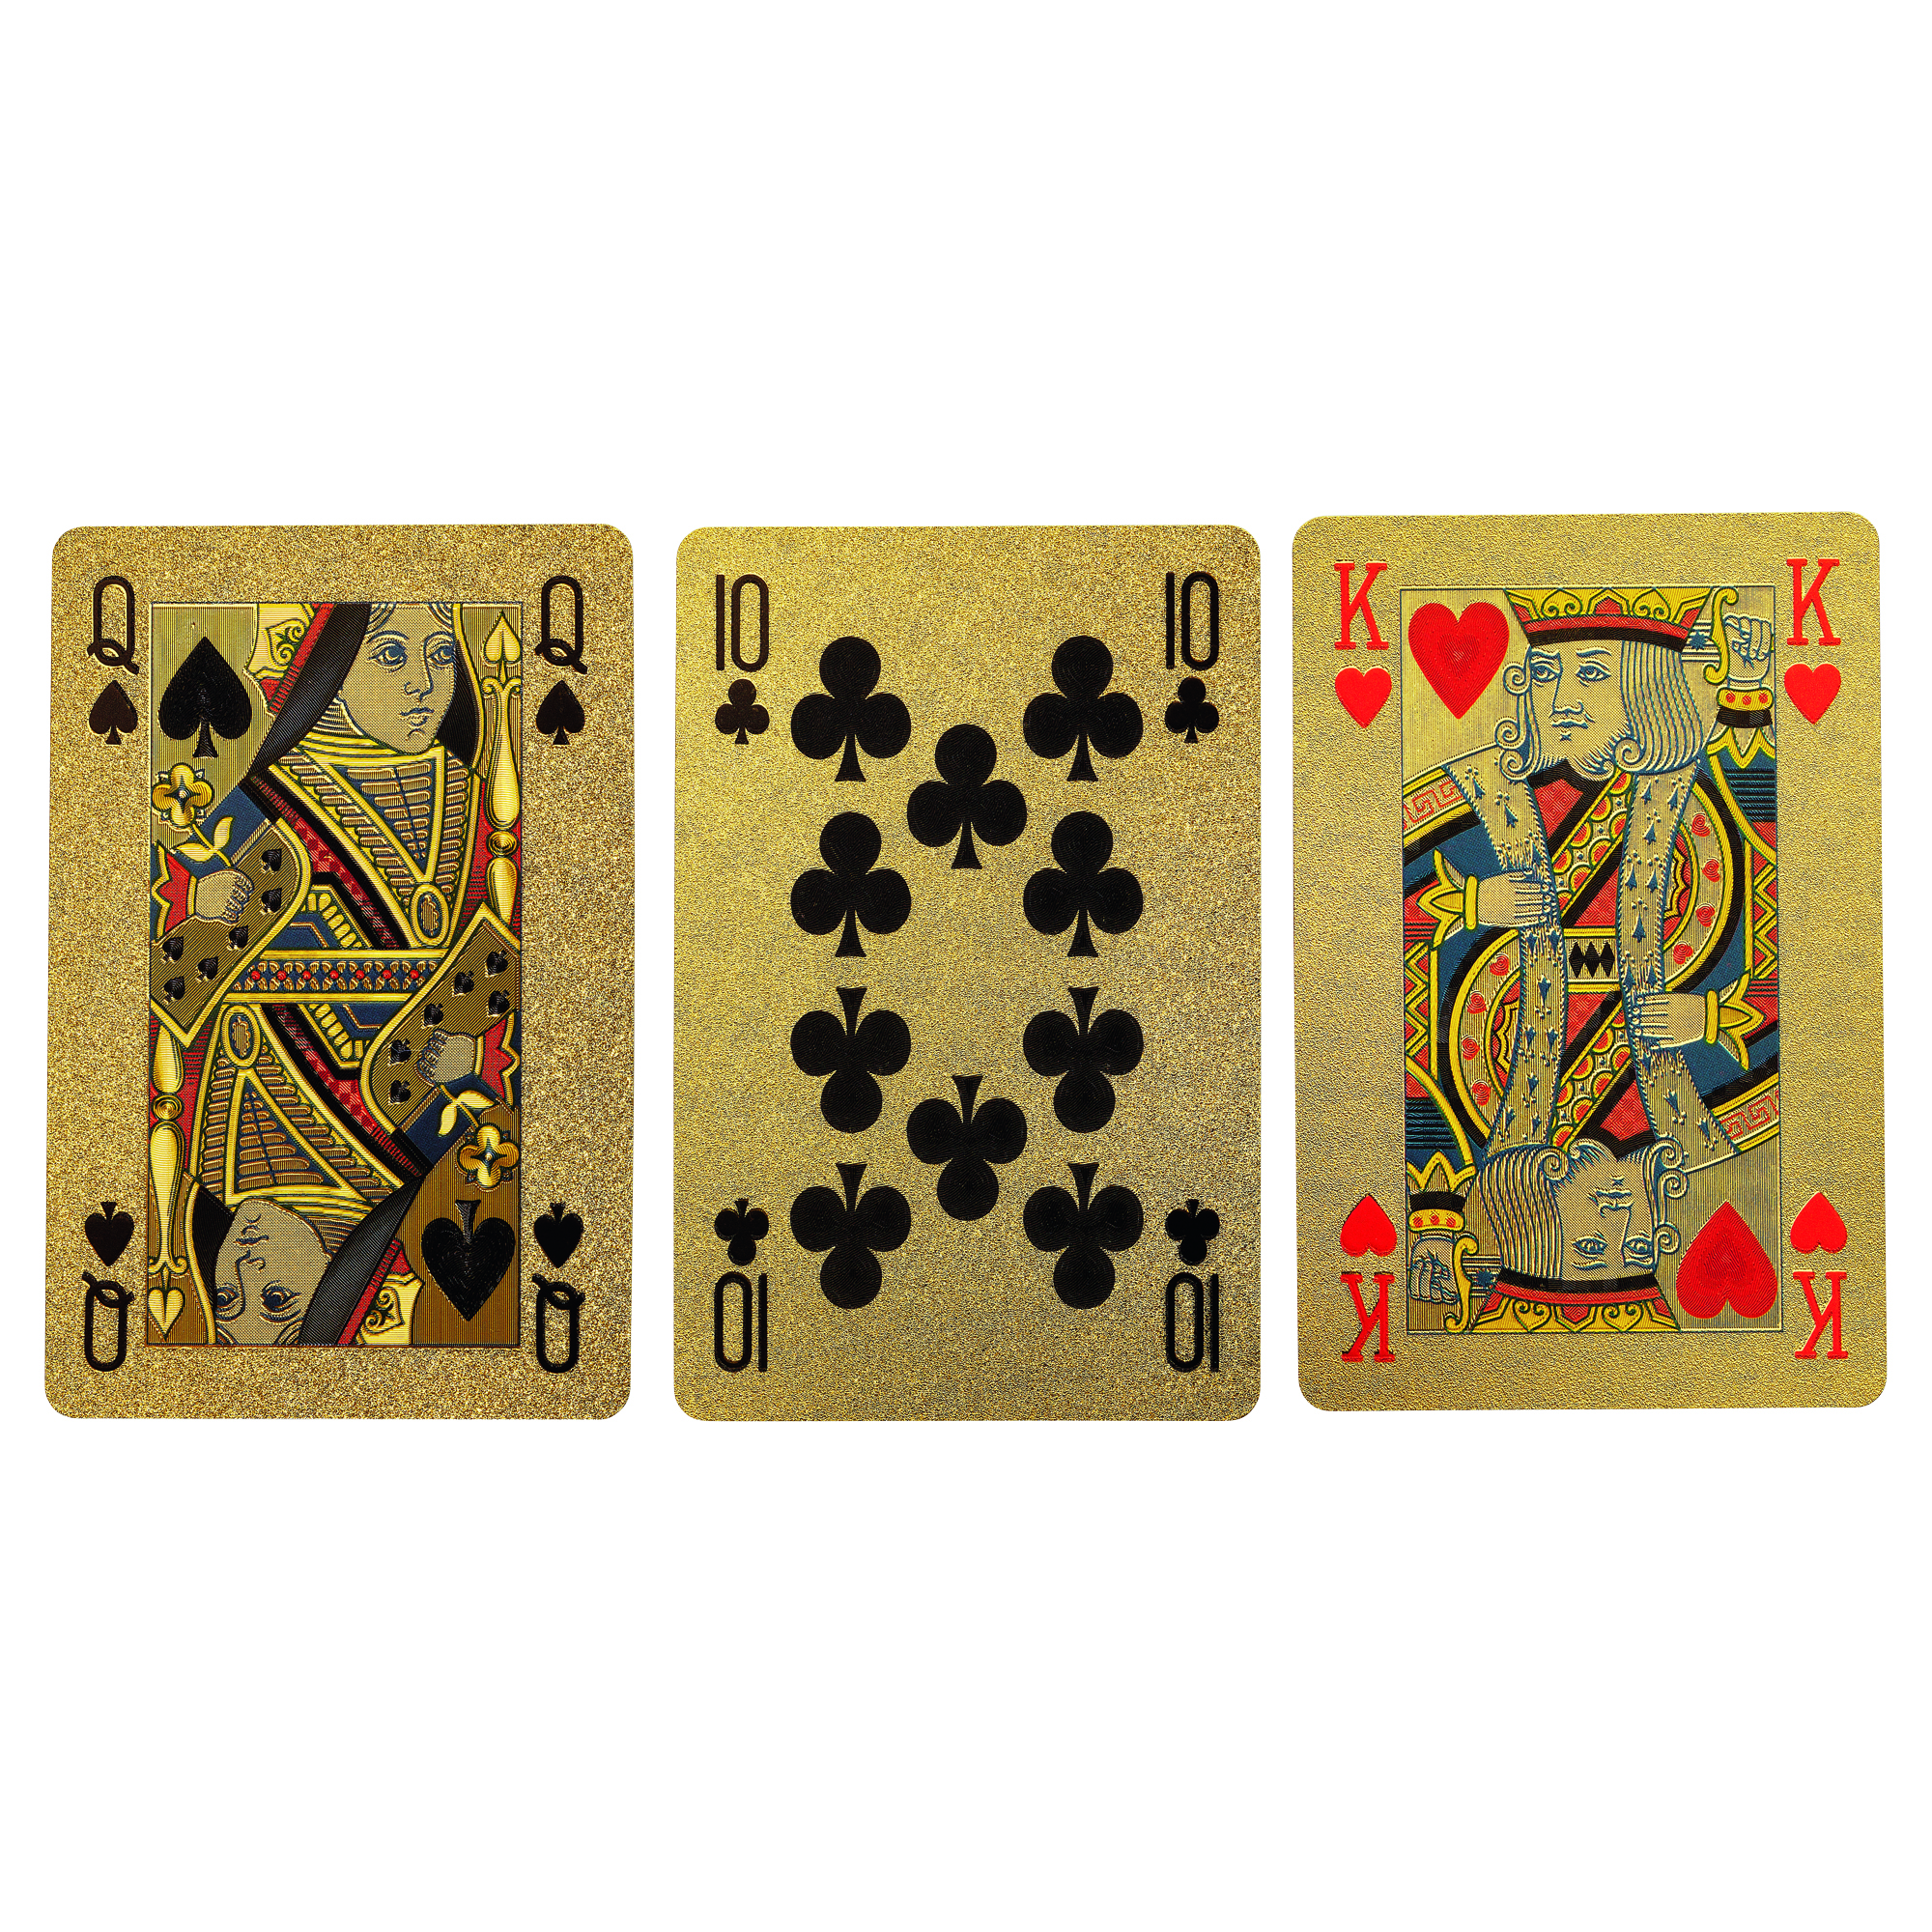 Jeu de multiplication en 54 cartes Sous forme de jeu de cartes - broché -  Collectif - Achat Livre